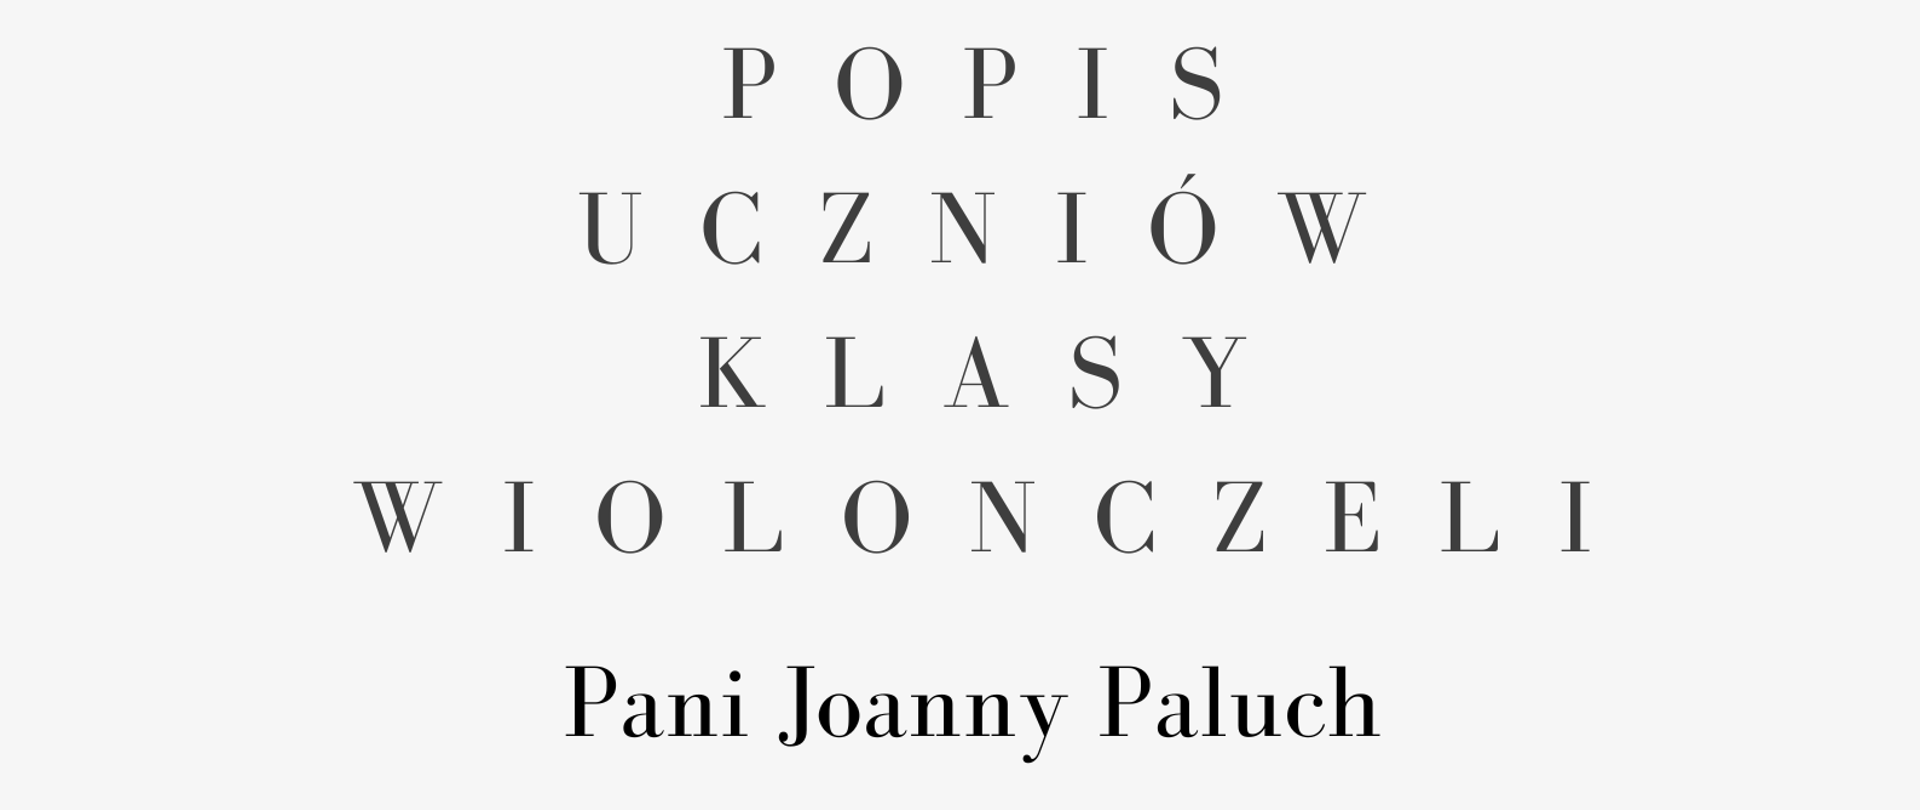 Plakat. Na górze strony czarno-białe zdjęcie kobiety z jasnymi, rozpuszczonymi włosami, w białej koszuli grającej na wiolonczeli. poniżej zdjęcia informacje o terminie i miejscu popisu klasy wiolonczeli Pani Joanny Paluch. 